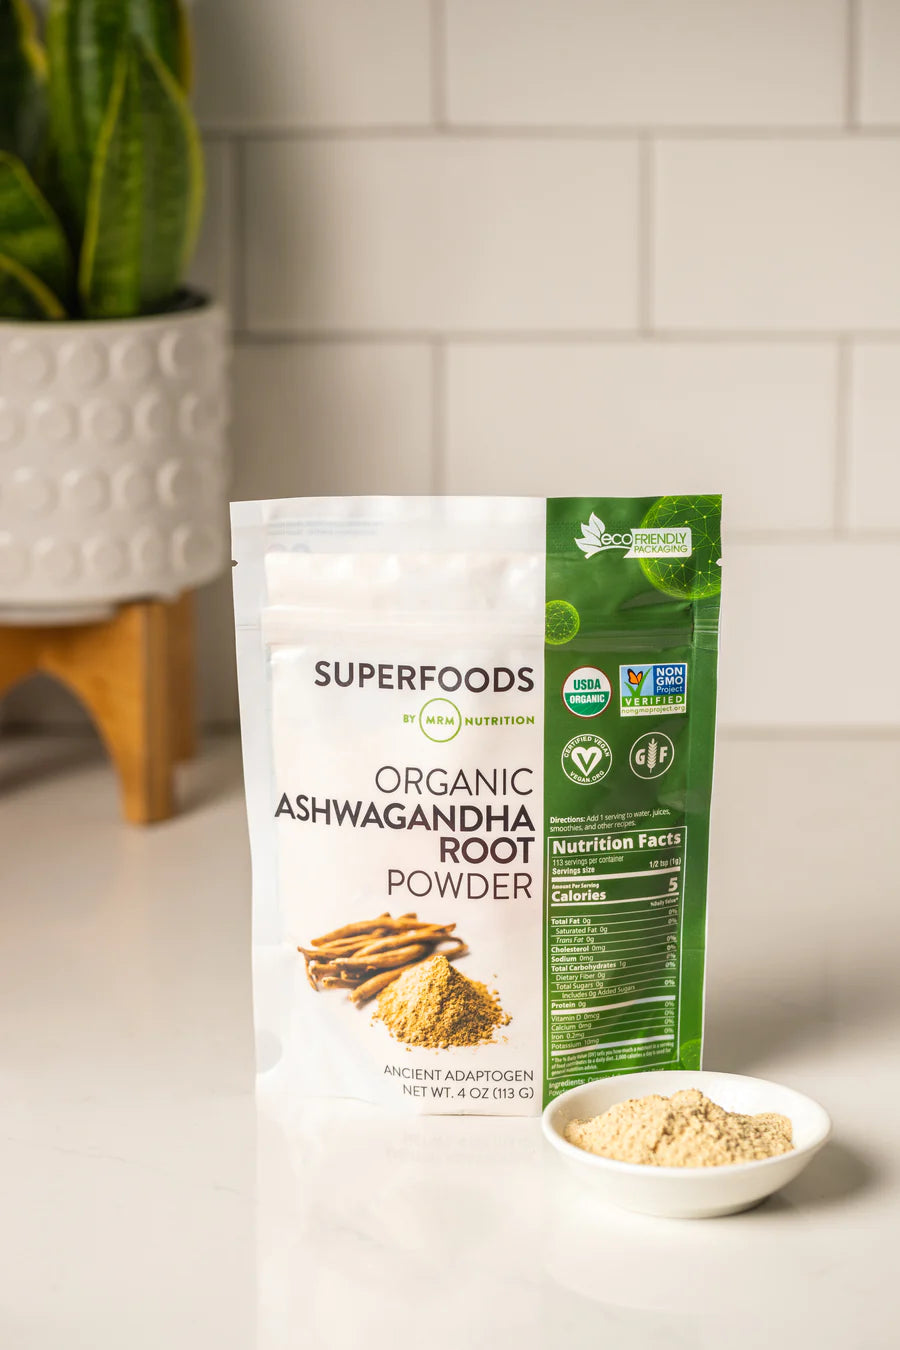 Superfoods - Organic Ashwagandha Root Powder 113g